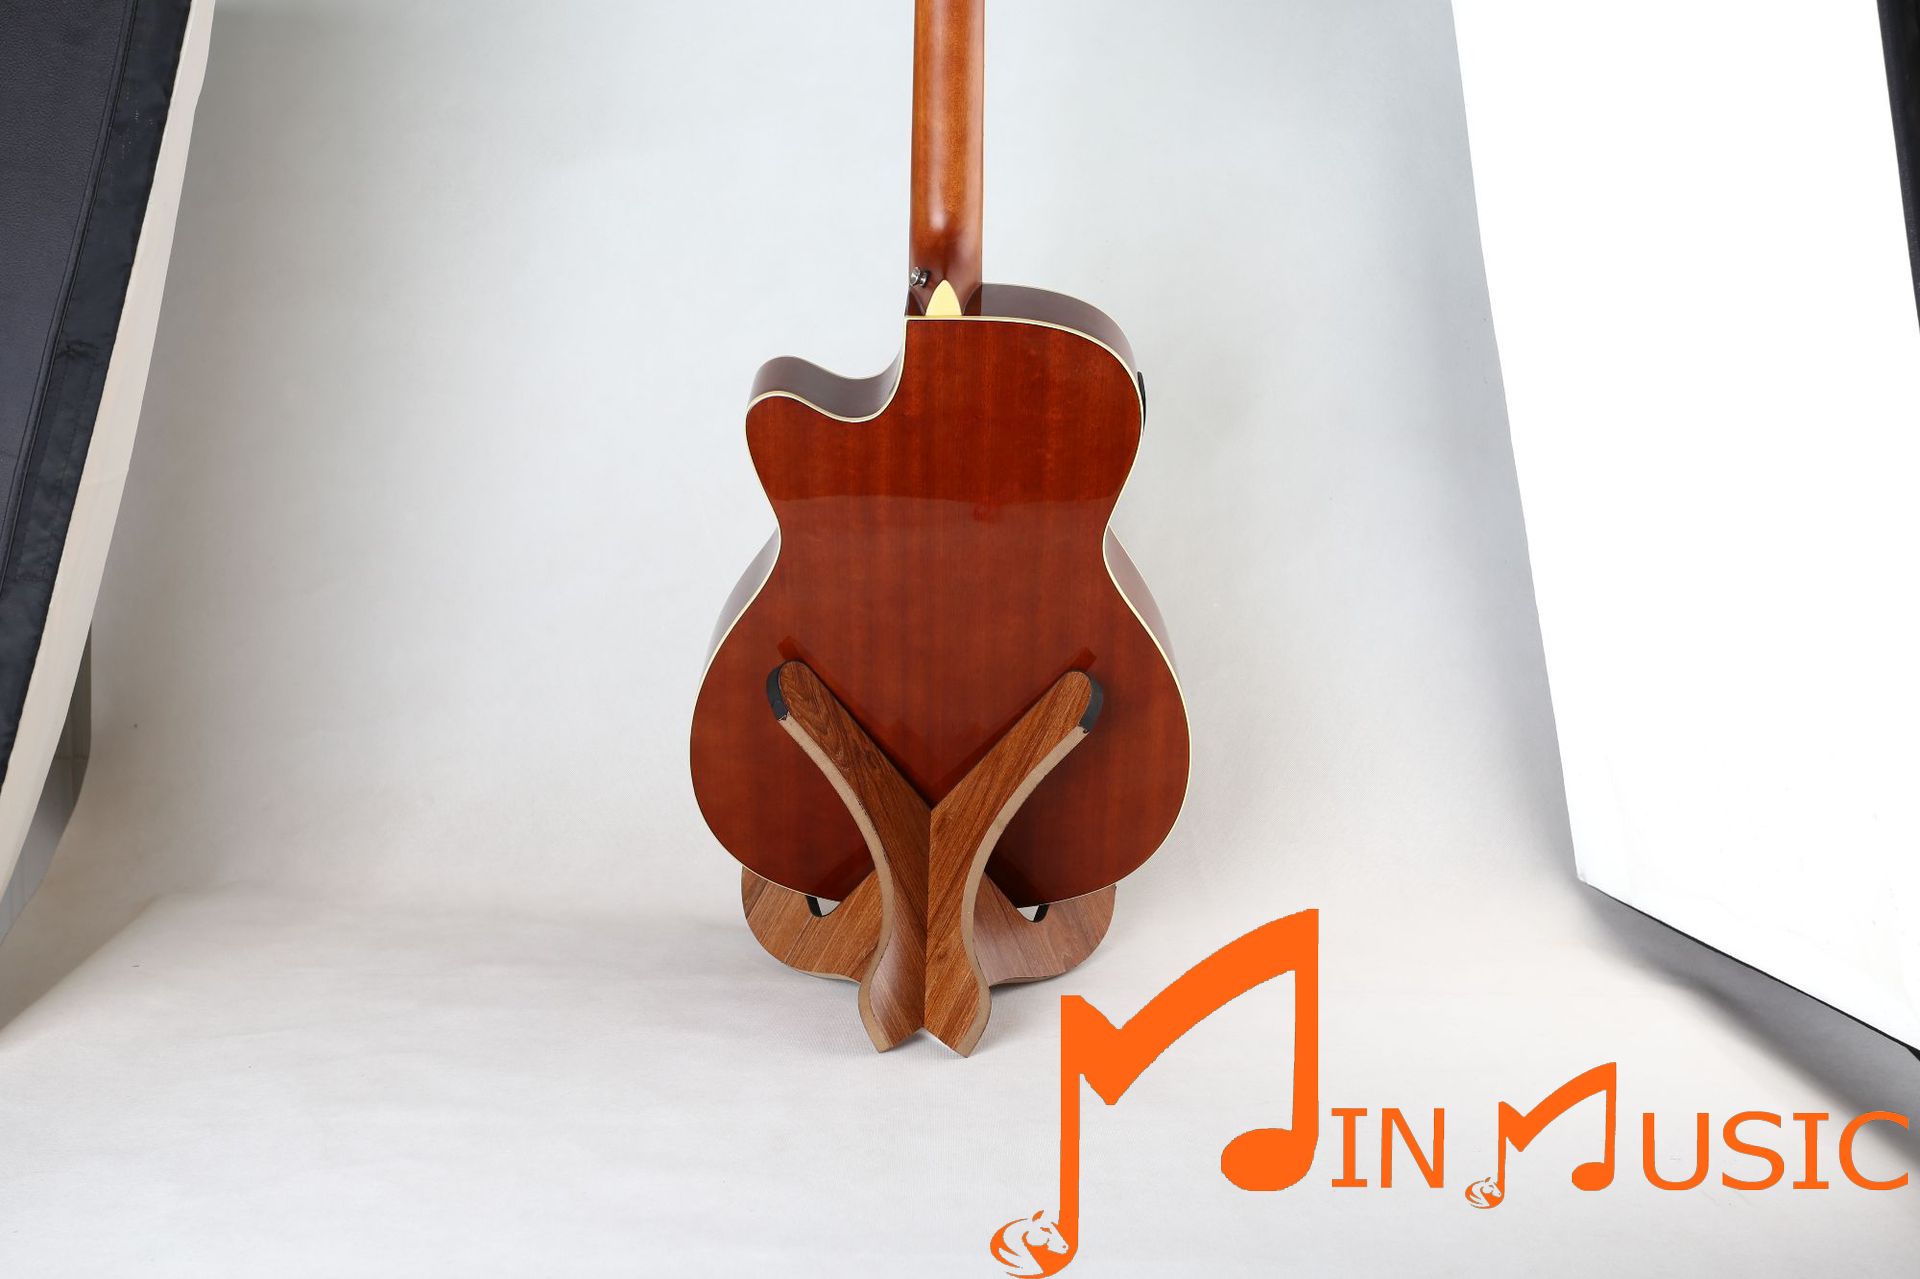 Chân để đàn guitar Loại bằng gỗ /có thể gấp gọn dễ mang vác